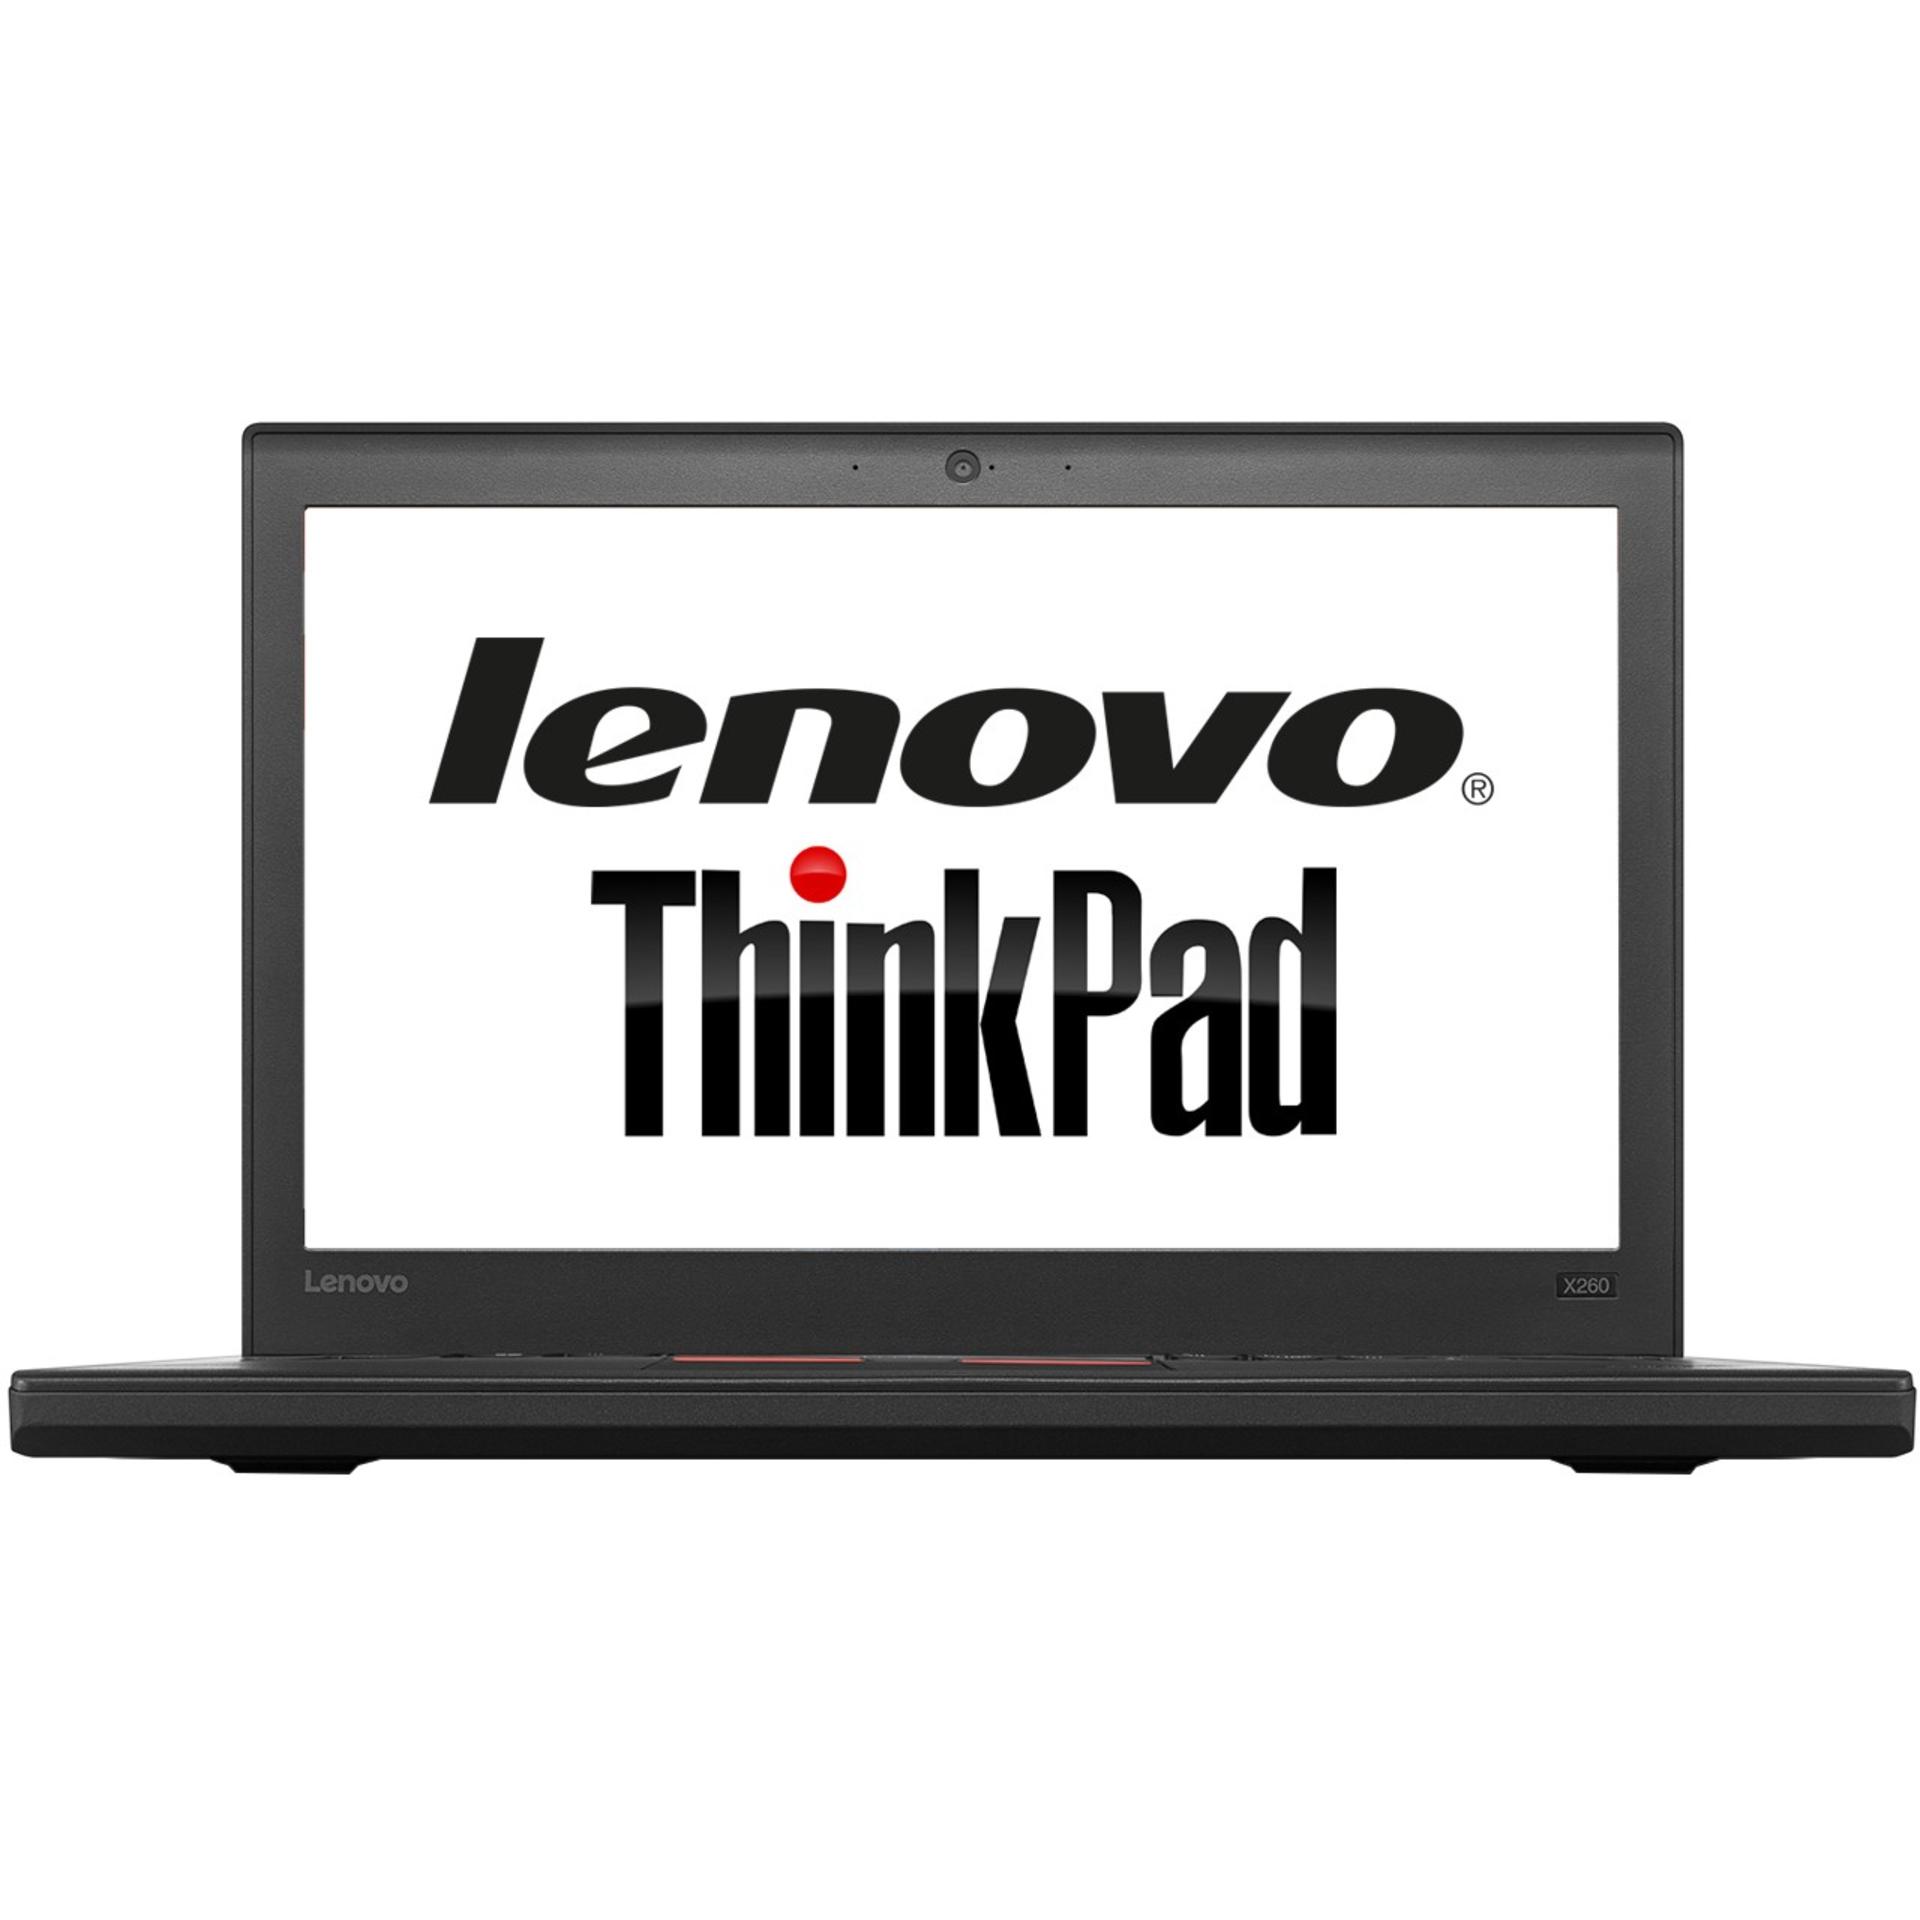 ThinkPad X260 لنوو - Core i5 8GB 1TB-0